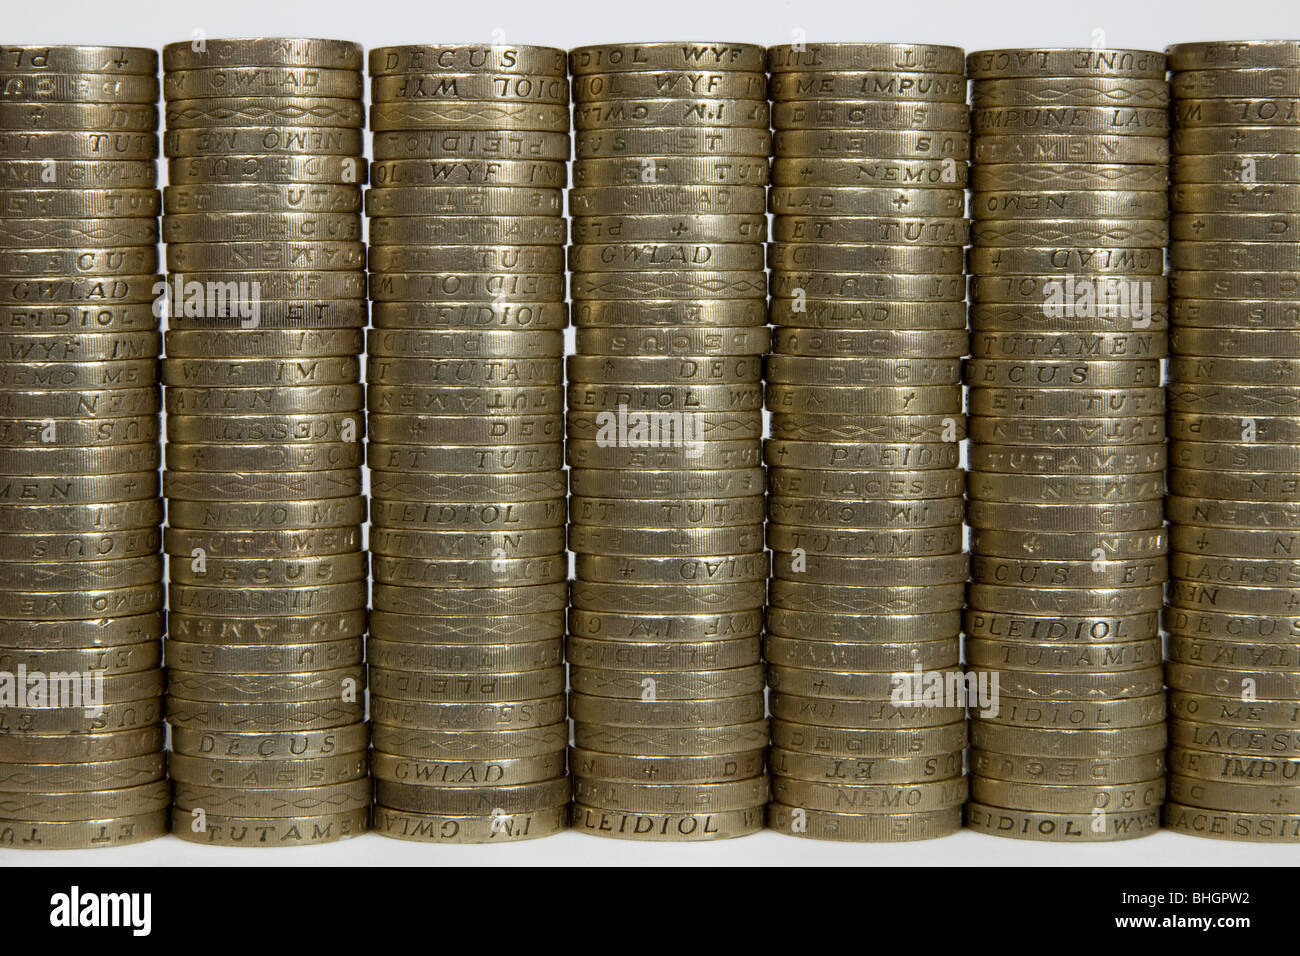 Sept piles de pièces de 1 livre du Royaume-Uni - c'est une photo utilisant les anciennes pièces de 1 £ qui ont été sorties de la circulation en octobre 2017. Banque D'Images